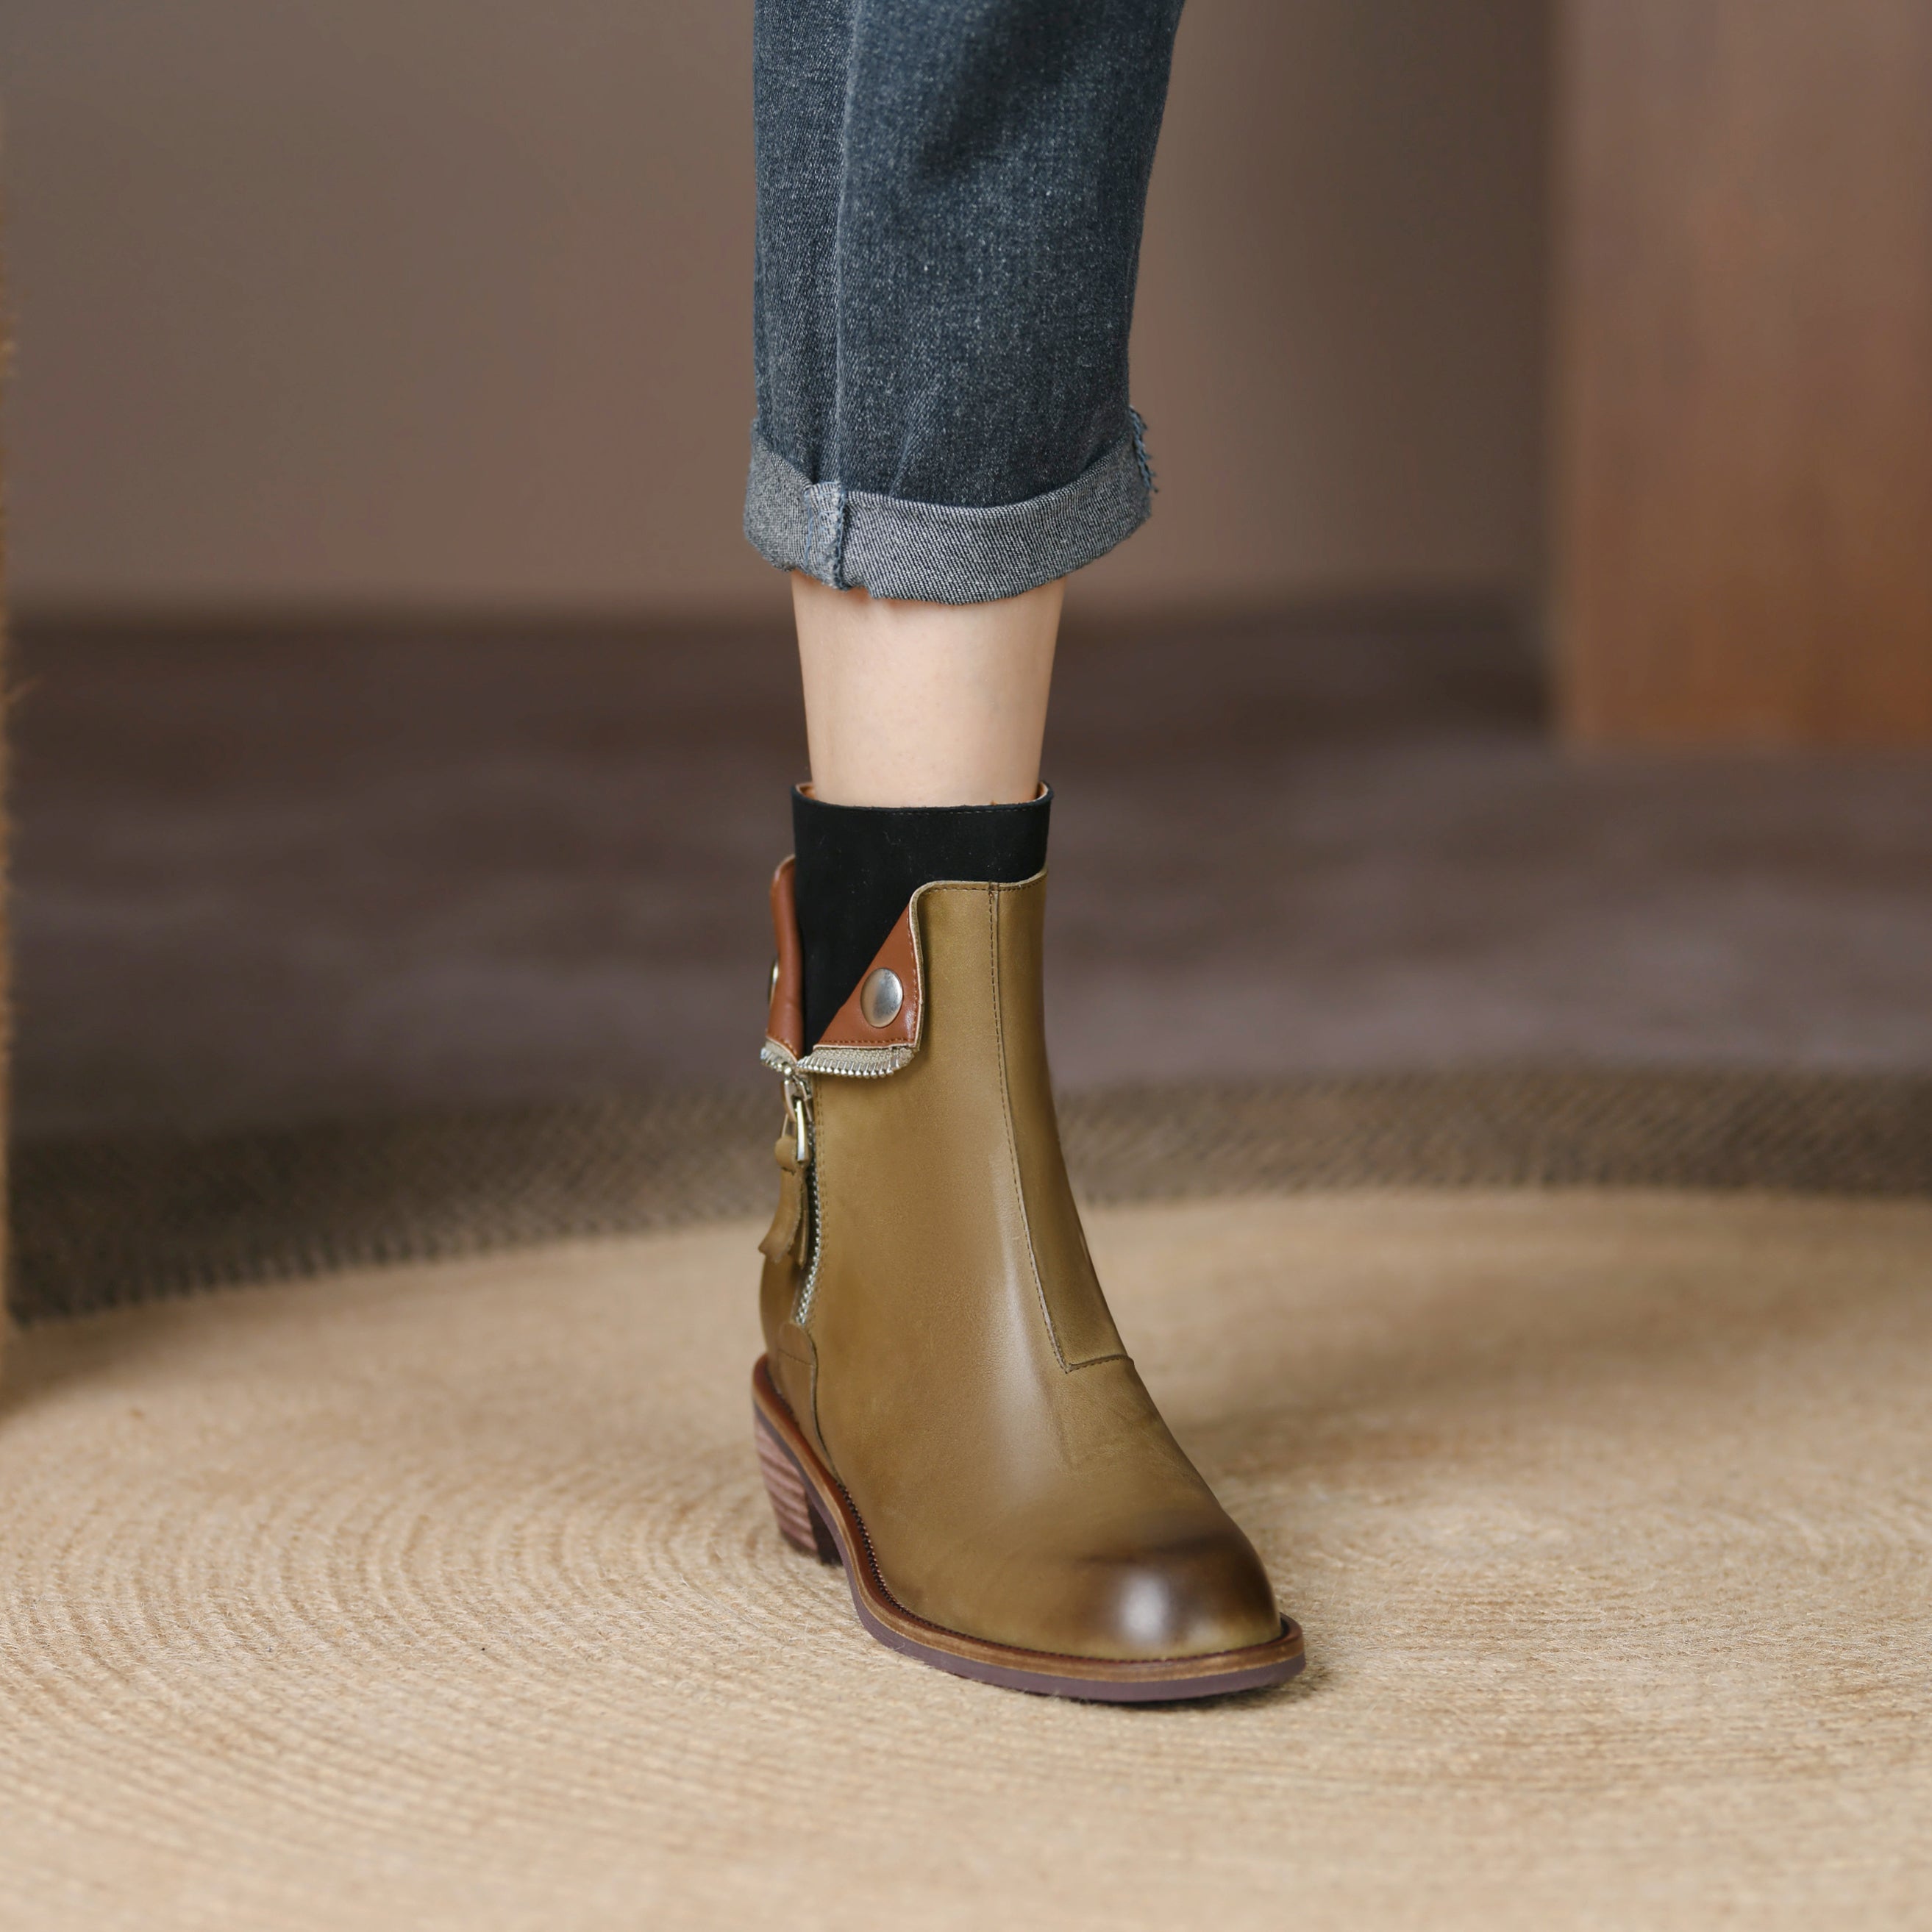 Bigsizeheels Polished round toe retro short boots - Green freeshipping - bigsizeheel®-size5-size15 -All Plus Sizes Available!